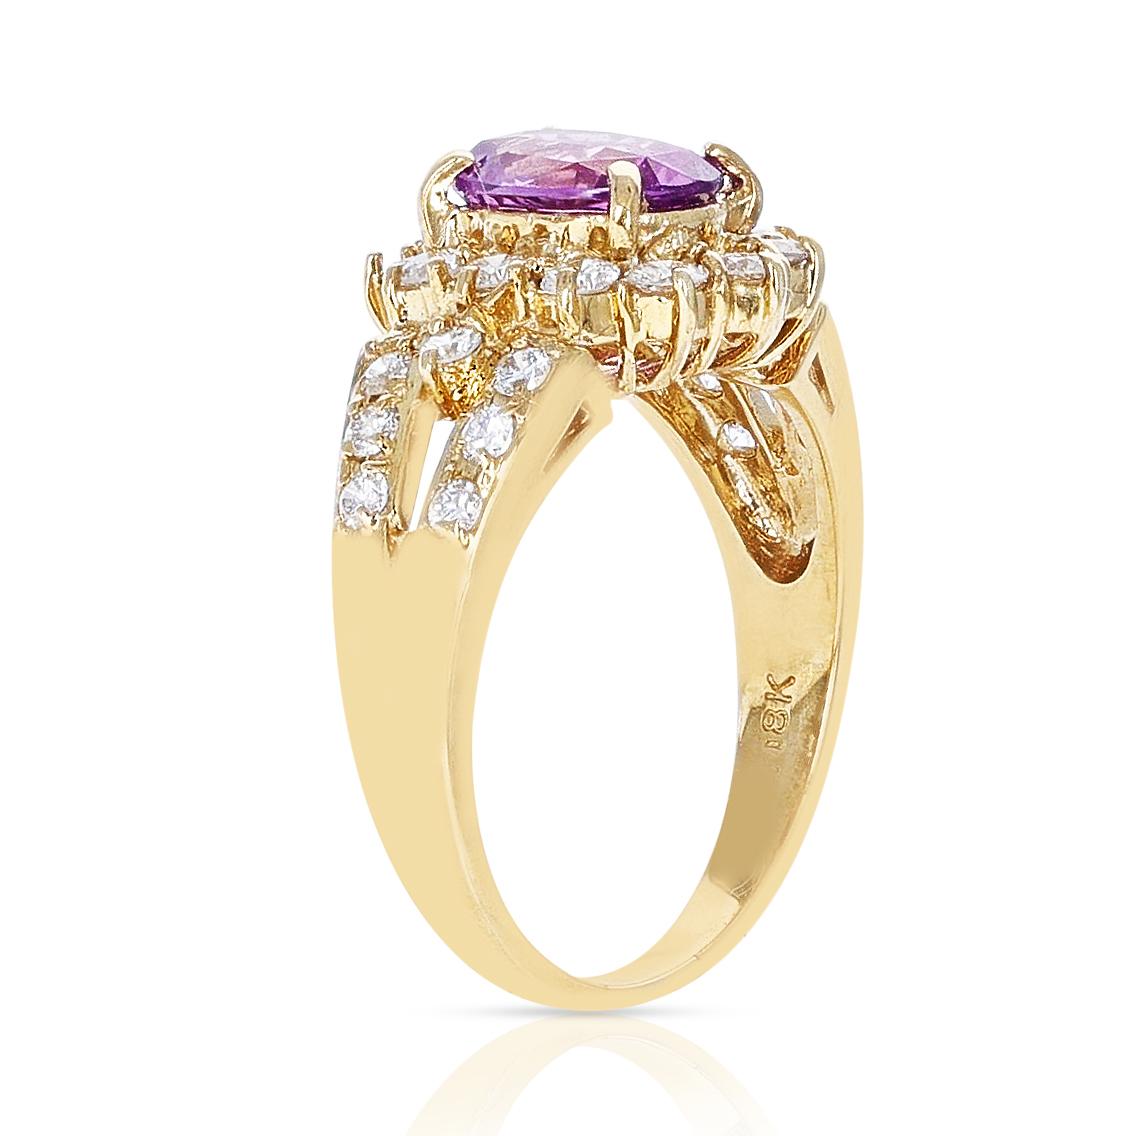 Ein atemberaubender 1,72 ct. Ovaler rosa Saphir und 1,30 ct. Diamantring aus 18 Karat Gelbgold. Das Gesamtgewicht des Rings beträgt 5,76 Gramm und die Ringgröße ist US 7.50. 